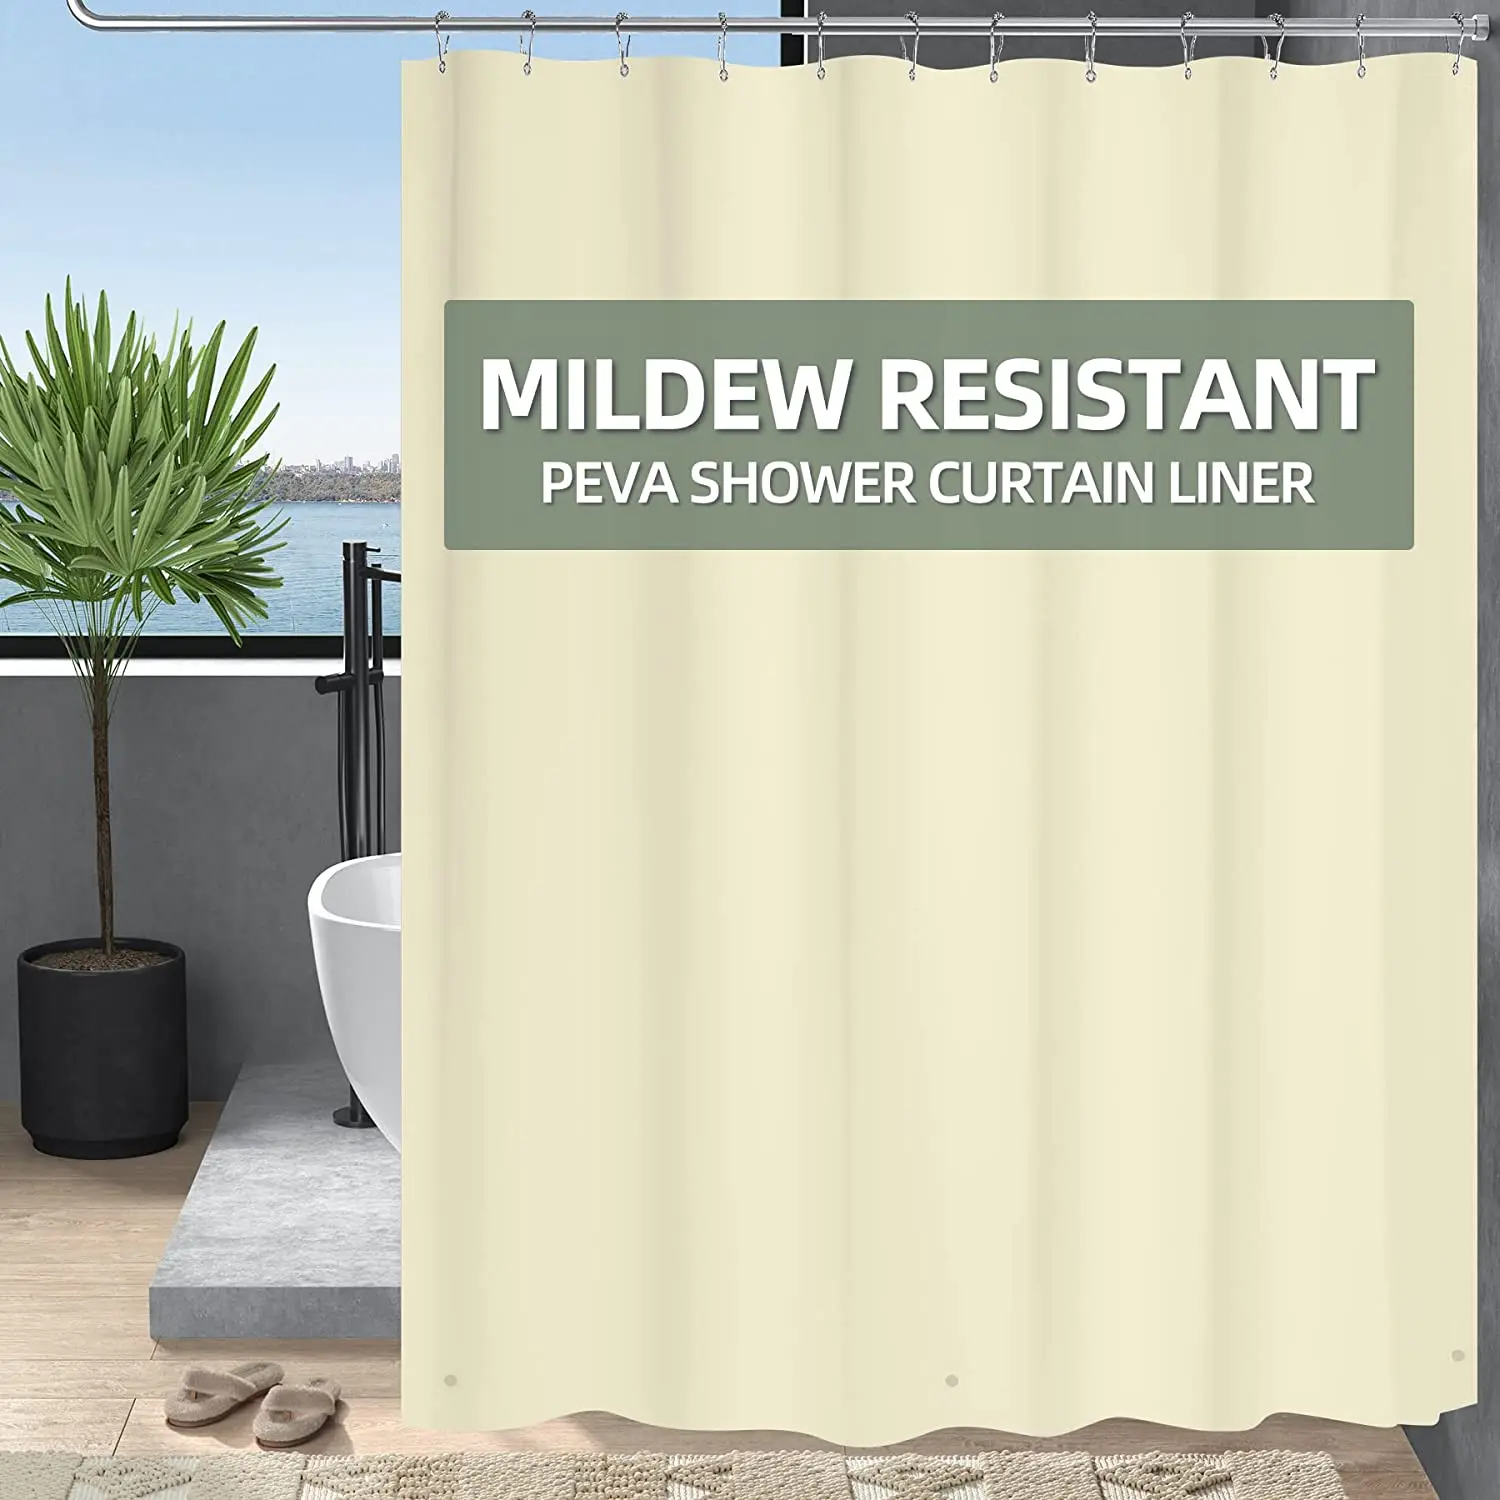 

Пластиковая бежевая душевая занавеска usunday PEVA, подкладка для ванной, 180x180 см